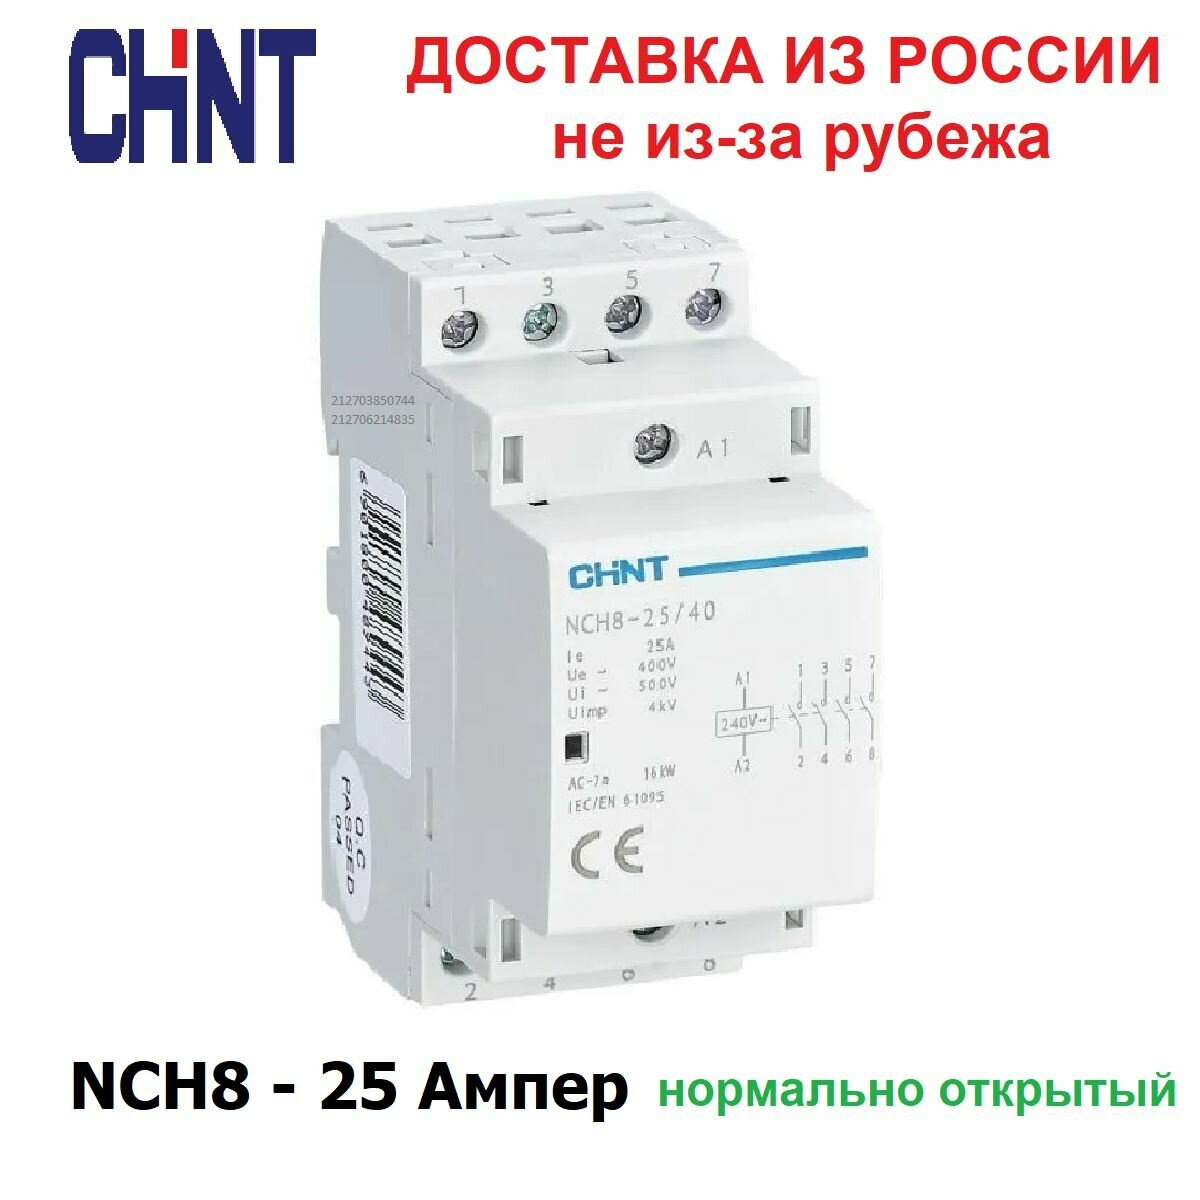 Контактор модульный CHINT NCH8-25/40, 25 Ампер, 400 Вольт, нормально разомкнутый (4NO), четырех полюсный, катушка 220 вольт, пускатель магнитный.